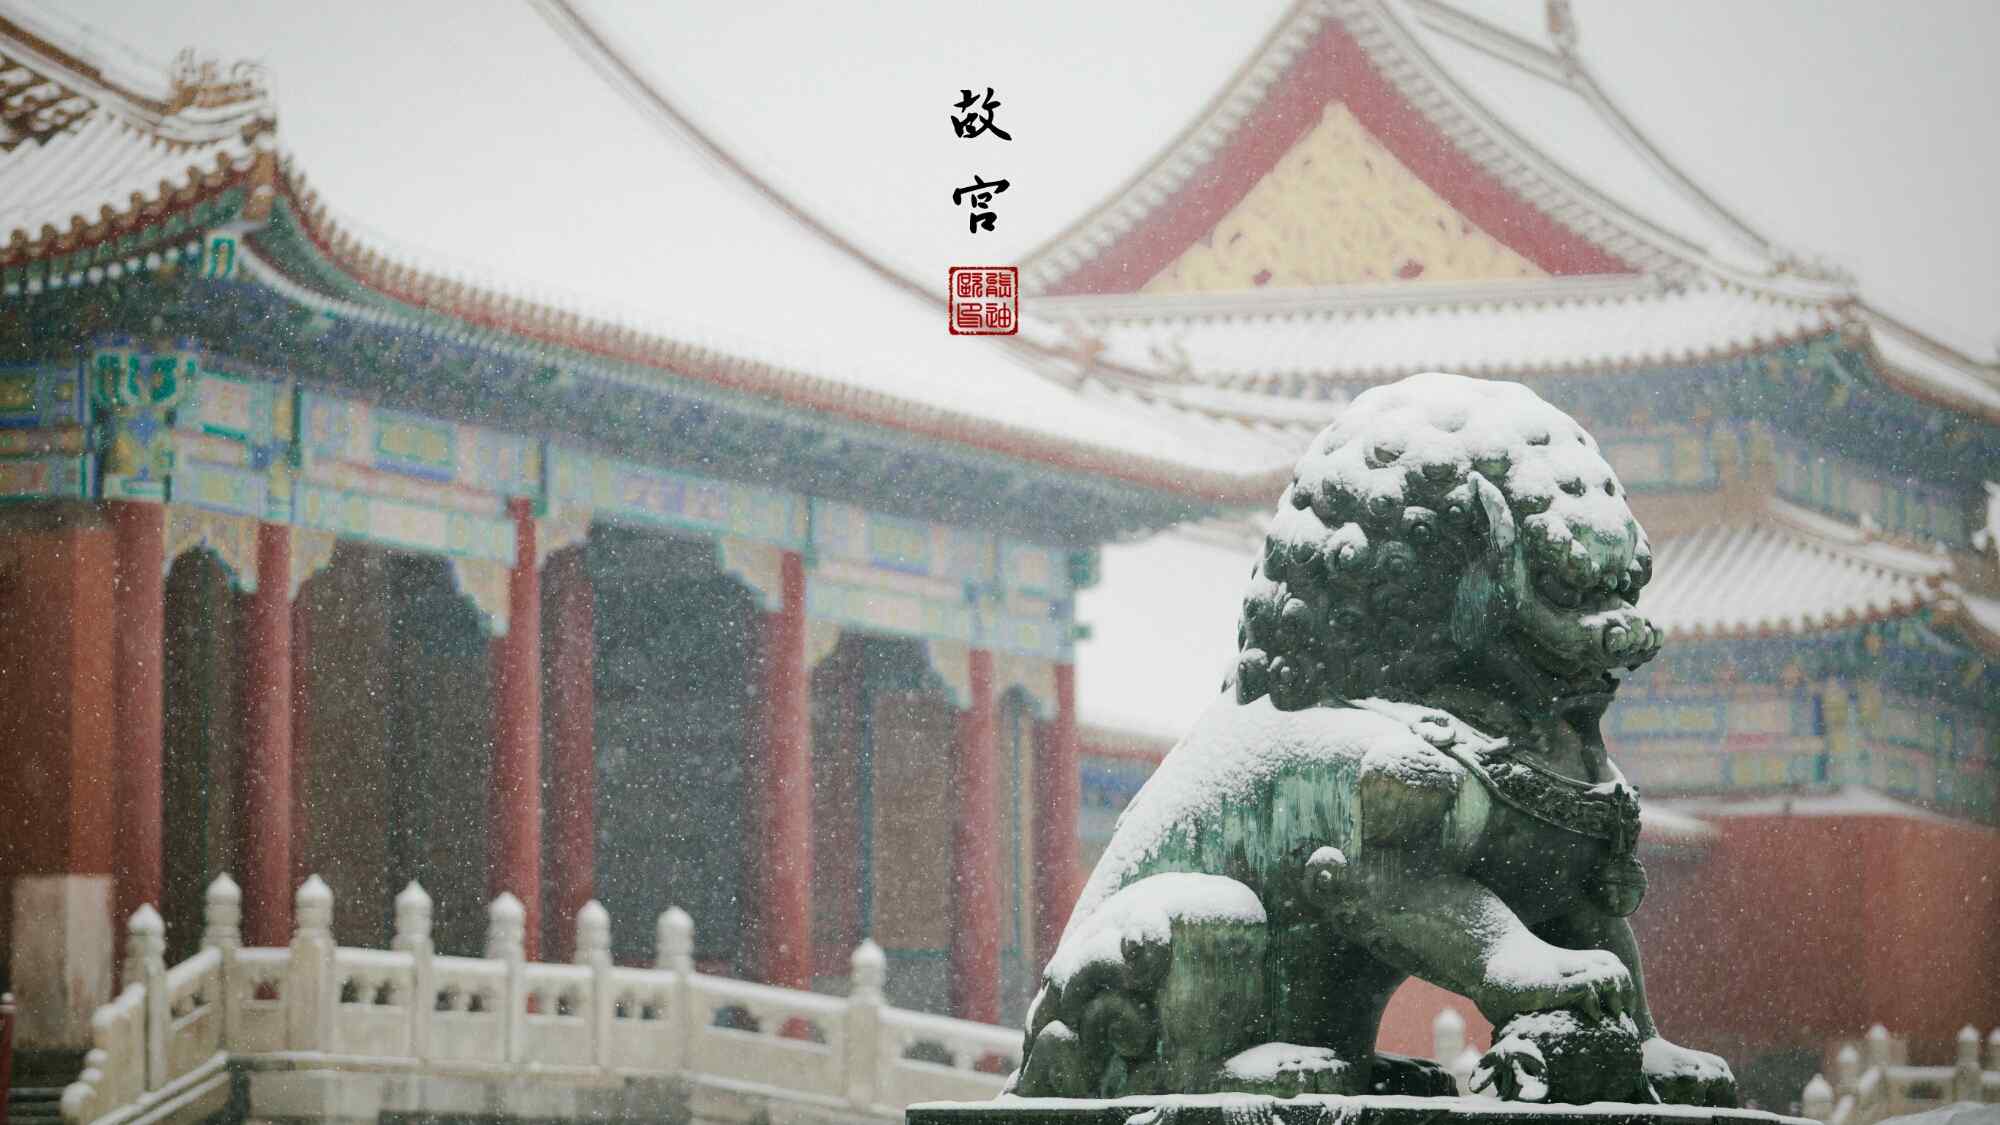 故宫石狮唯美雪景图片高清桌面壁纸